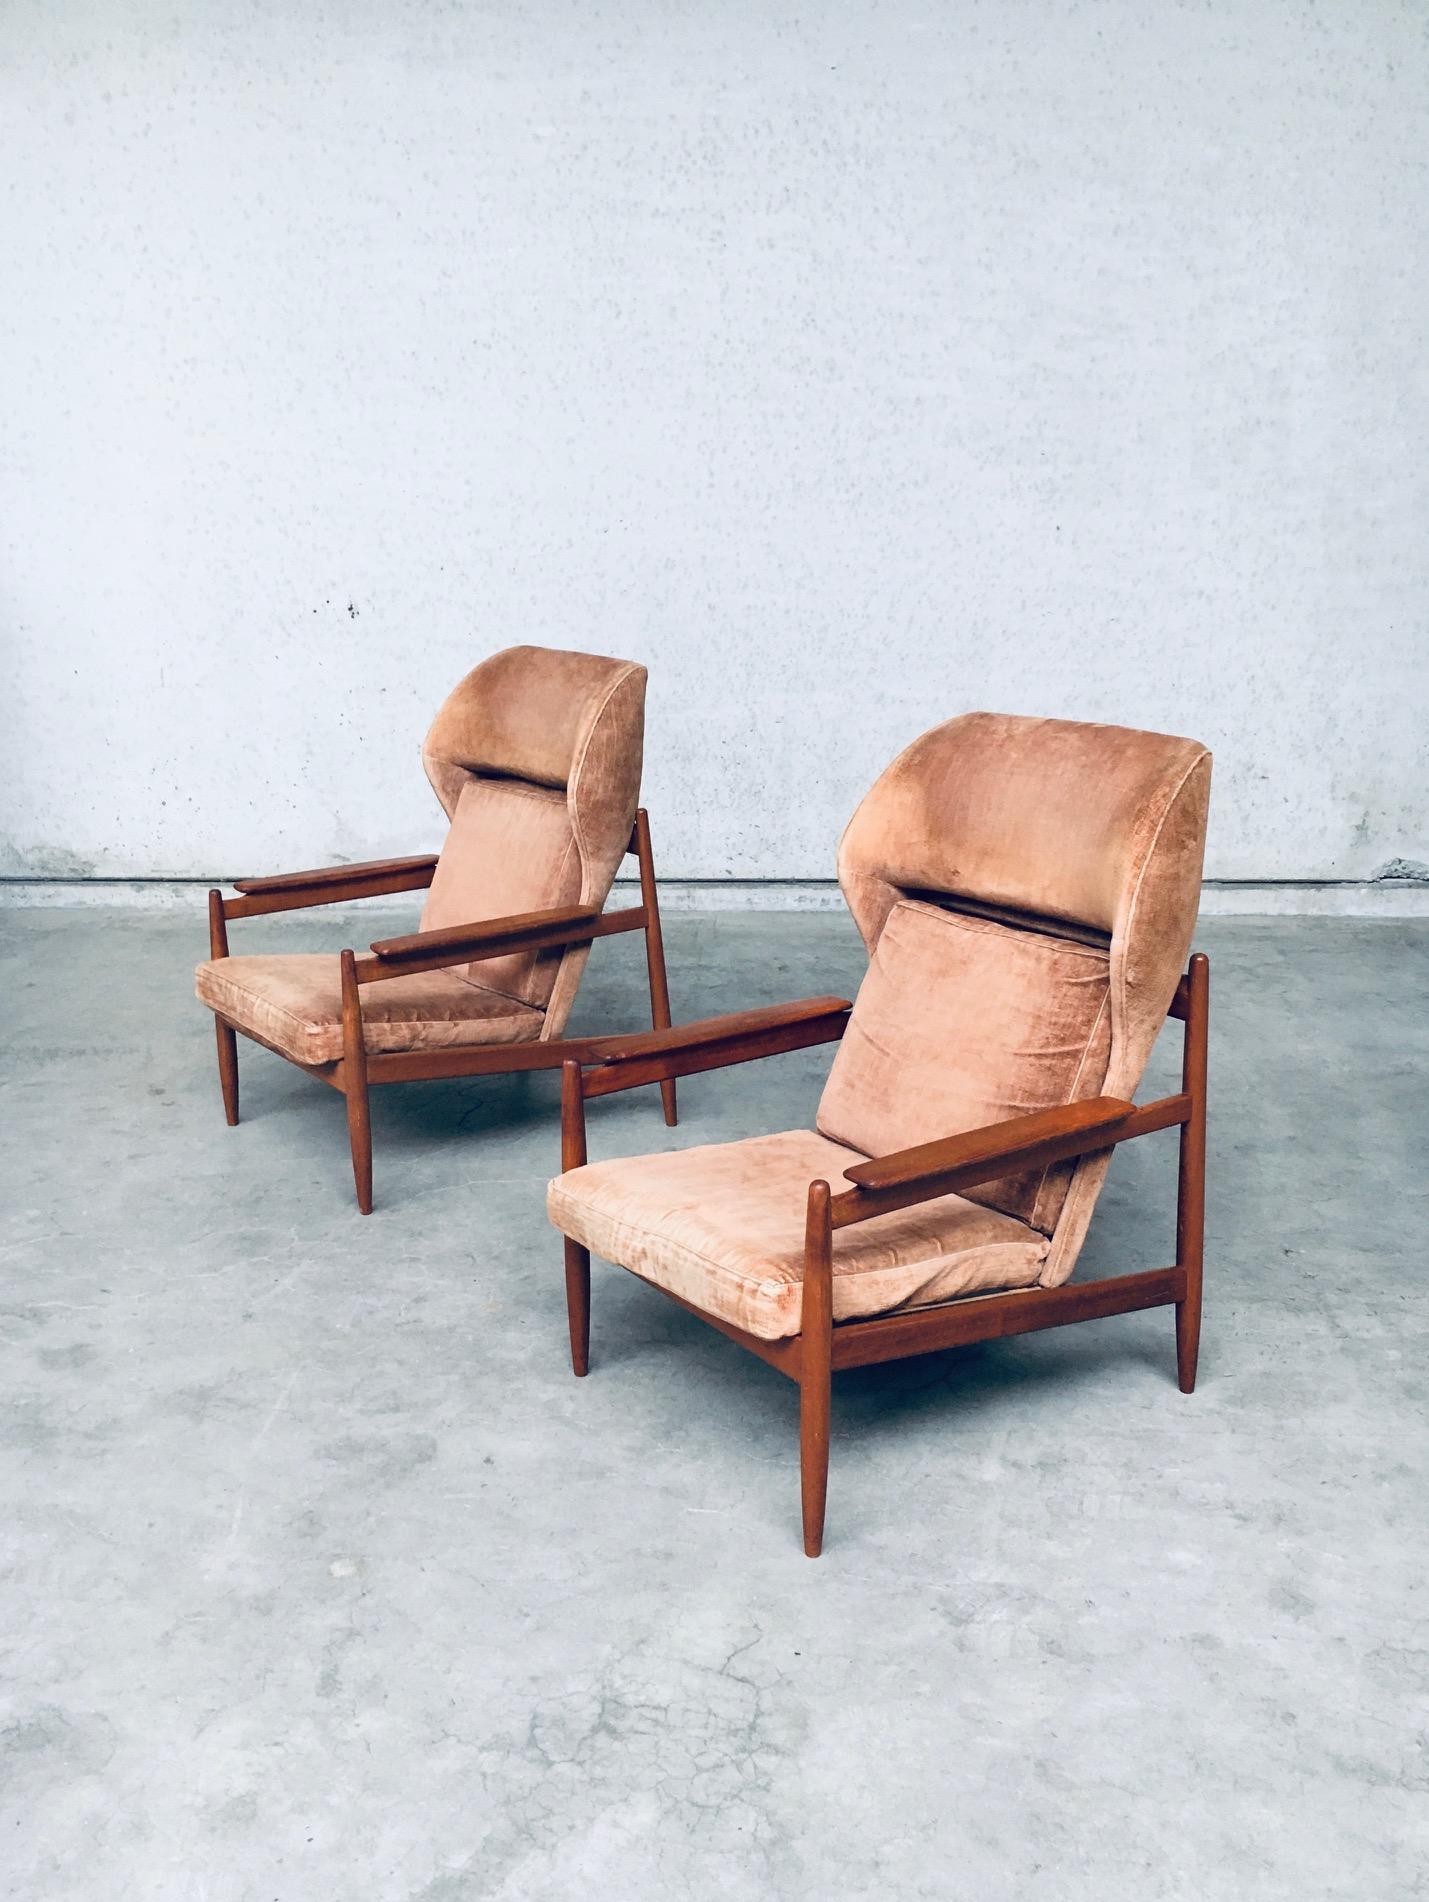 Vintage Midcentury Modern Scandinavian Design Wing Back Lounge Chair set of 2. Fabriqué au Danemark, Kopenhagen, 1960's. Rare ensemble de fauteuils. Aucune marque ou référence de fabricant n'a été trouvée. Cadre en bois de teck et housses en tissu